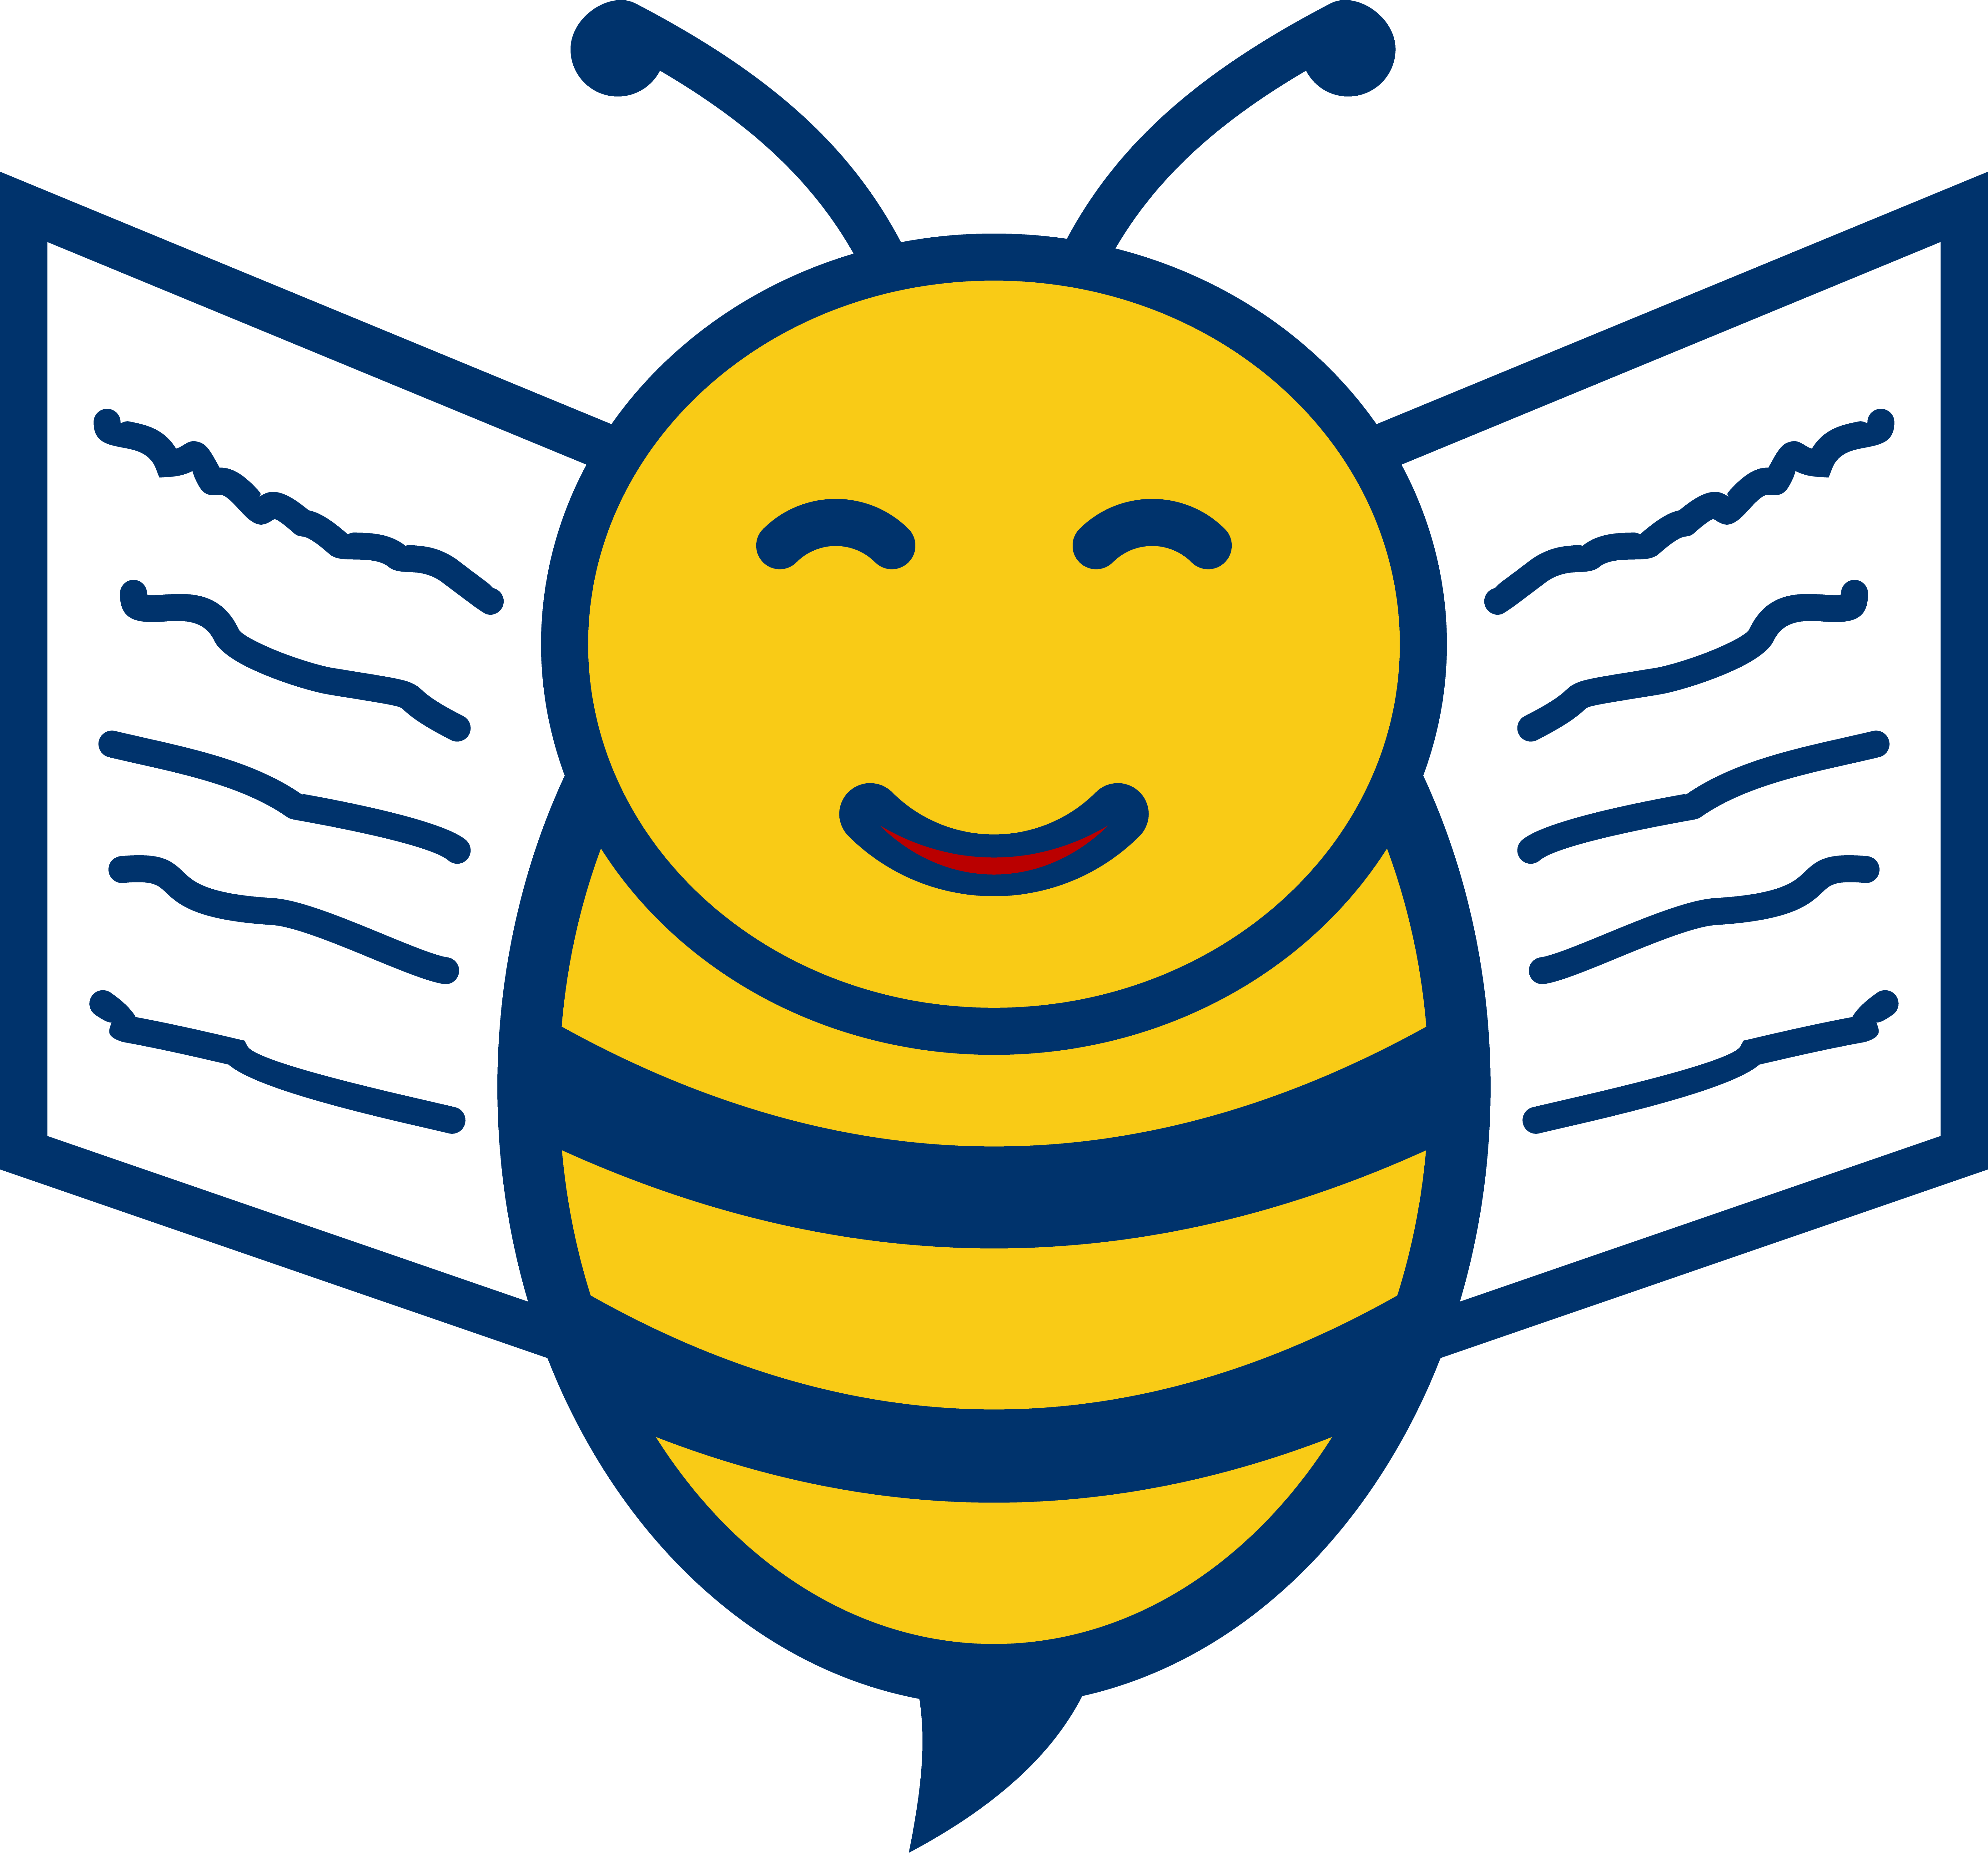 Client Buzz bee logo